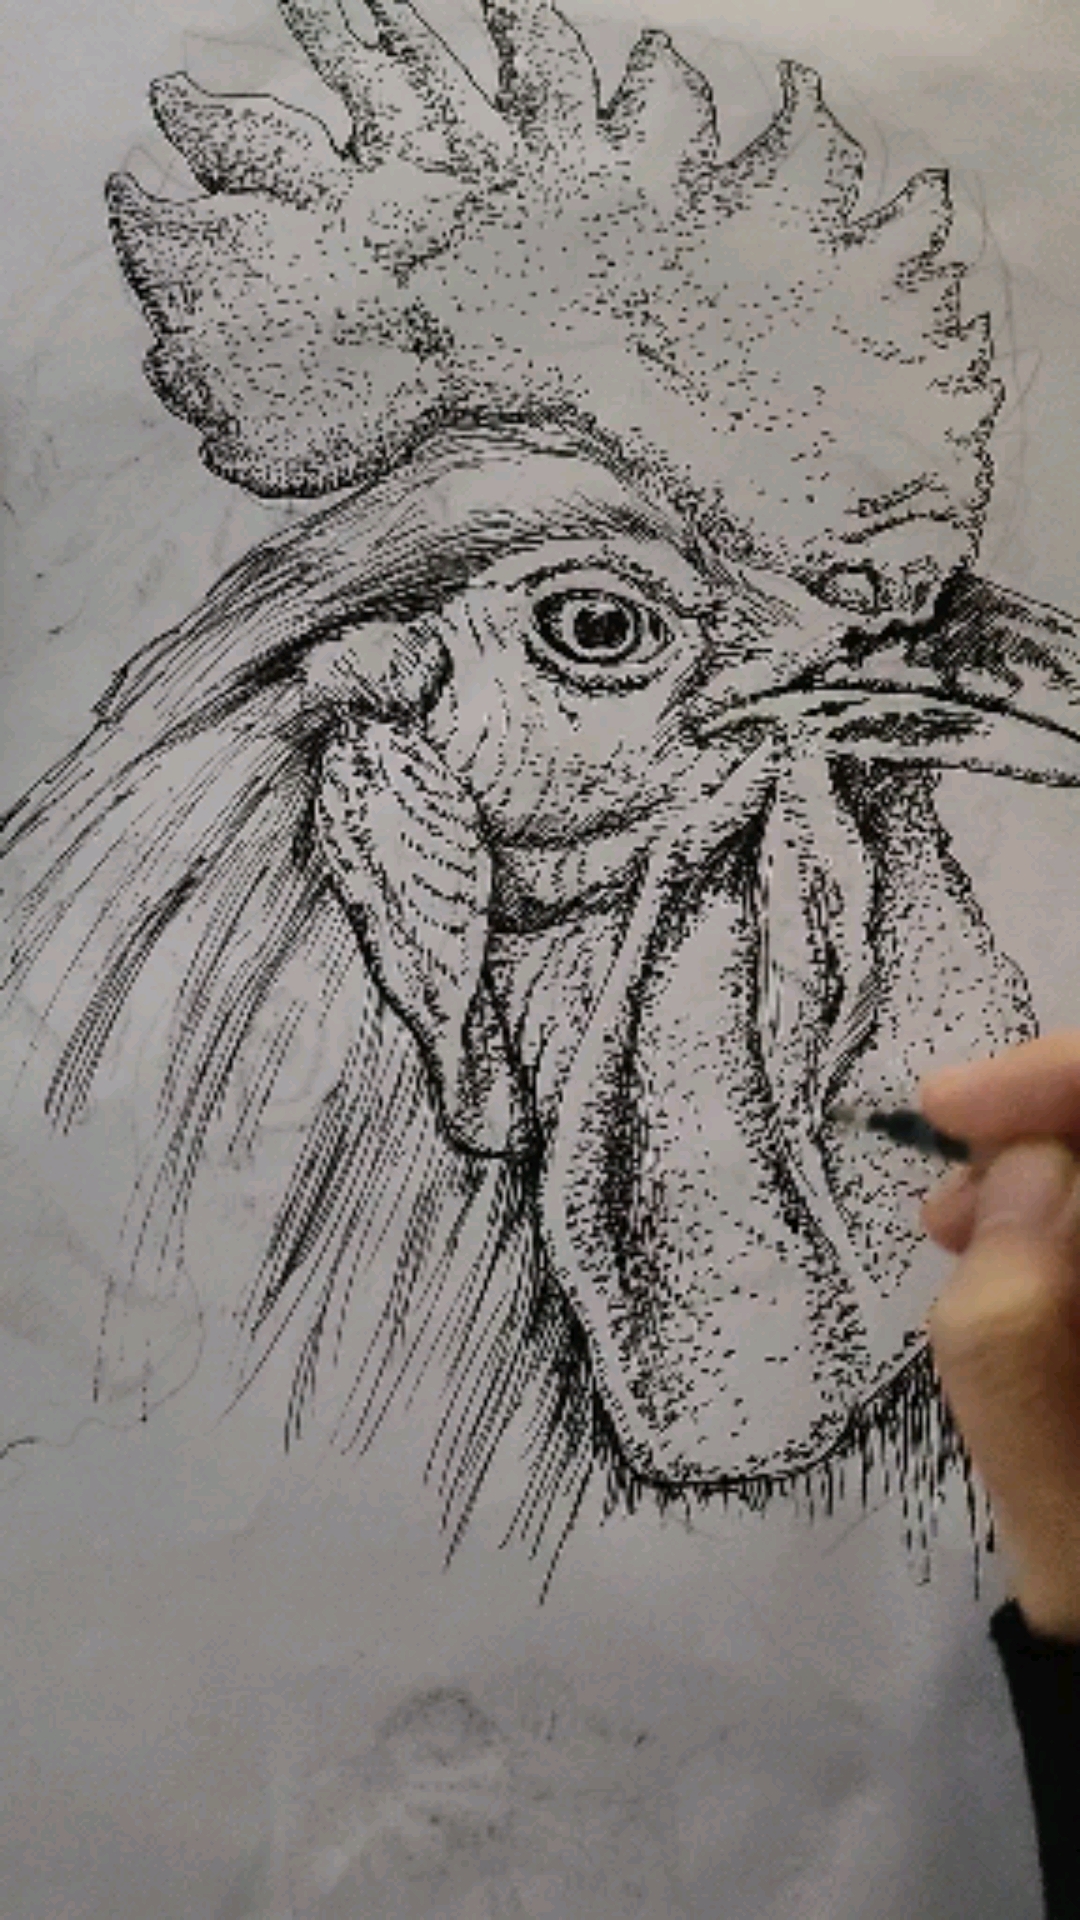 公鸡素描画法图片